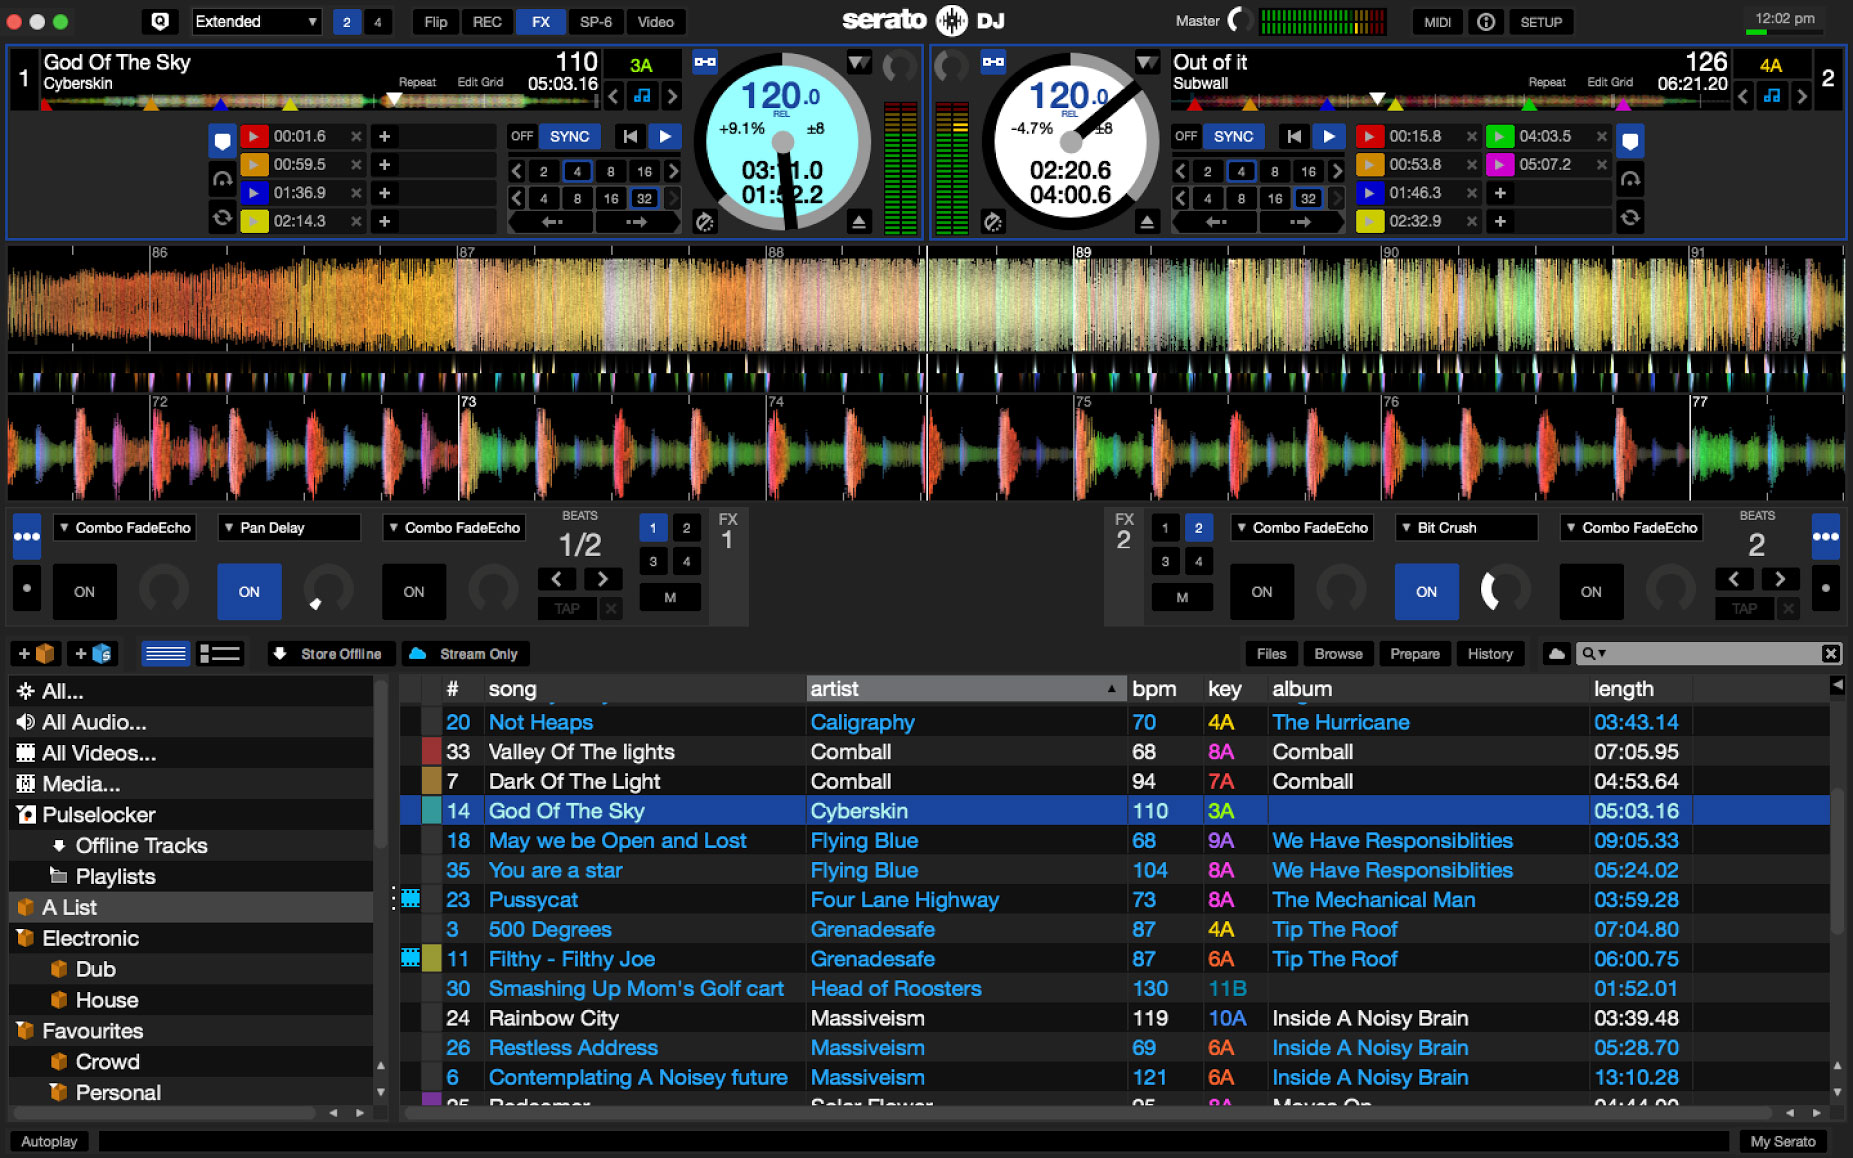 Serato DJ Pro 3.0.7.504 download the new